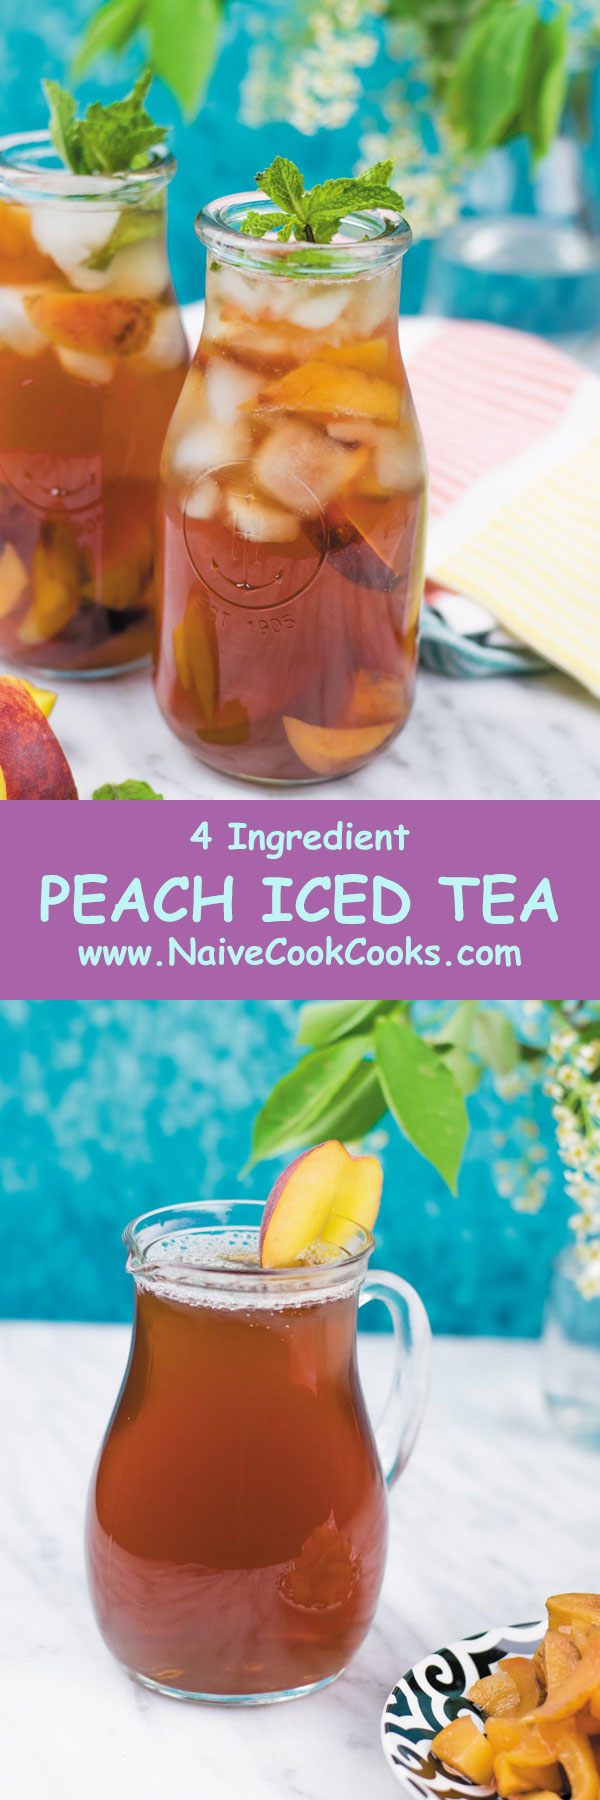 peach iced tea ready to drink